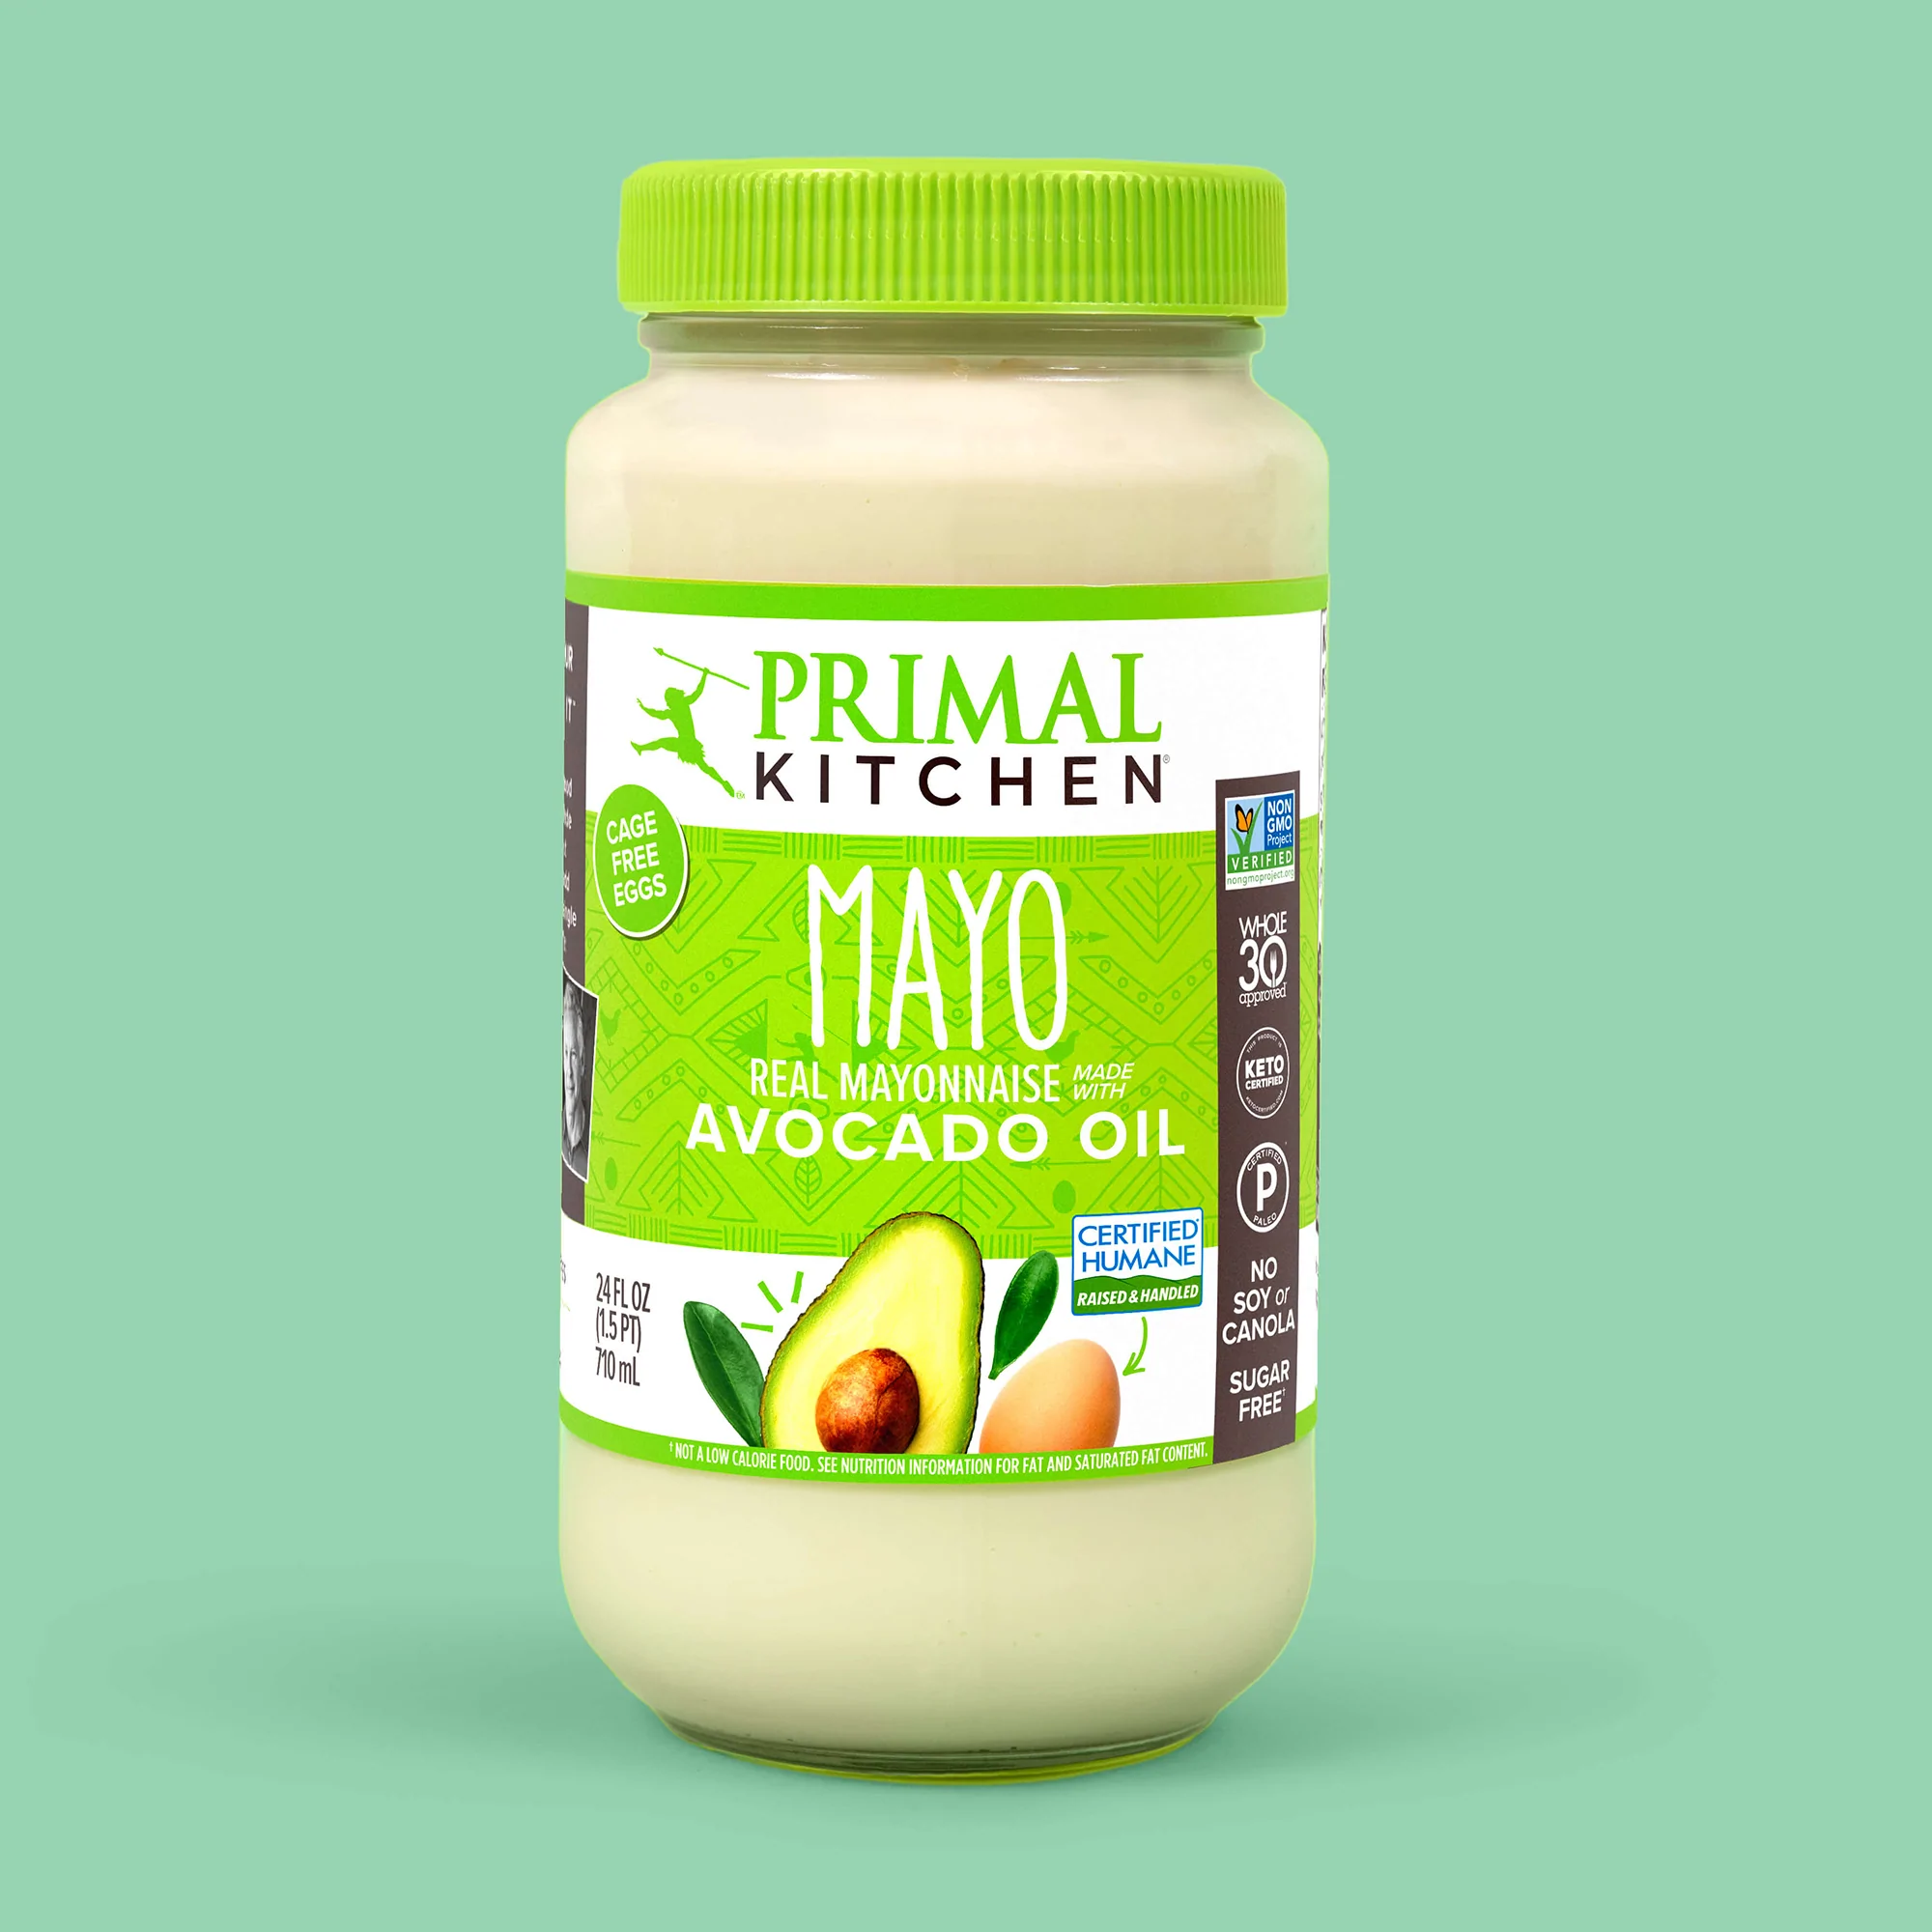 Primal Kitchen Mayo - 24 fl oz